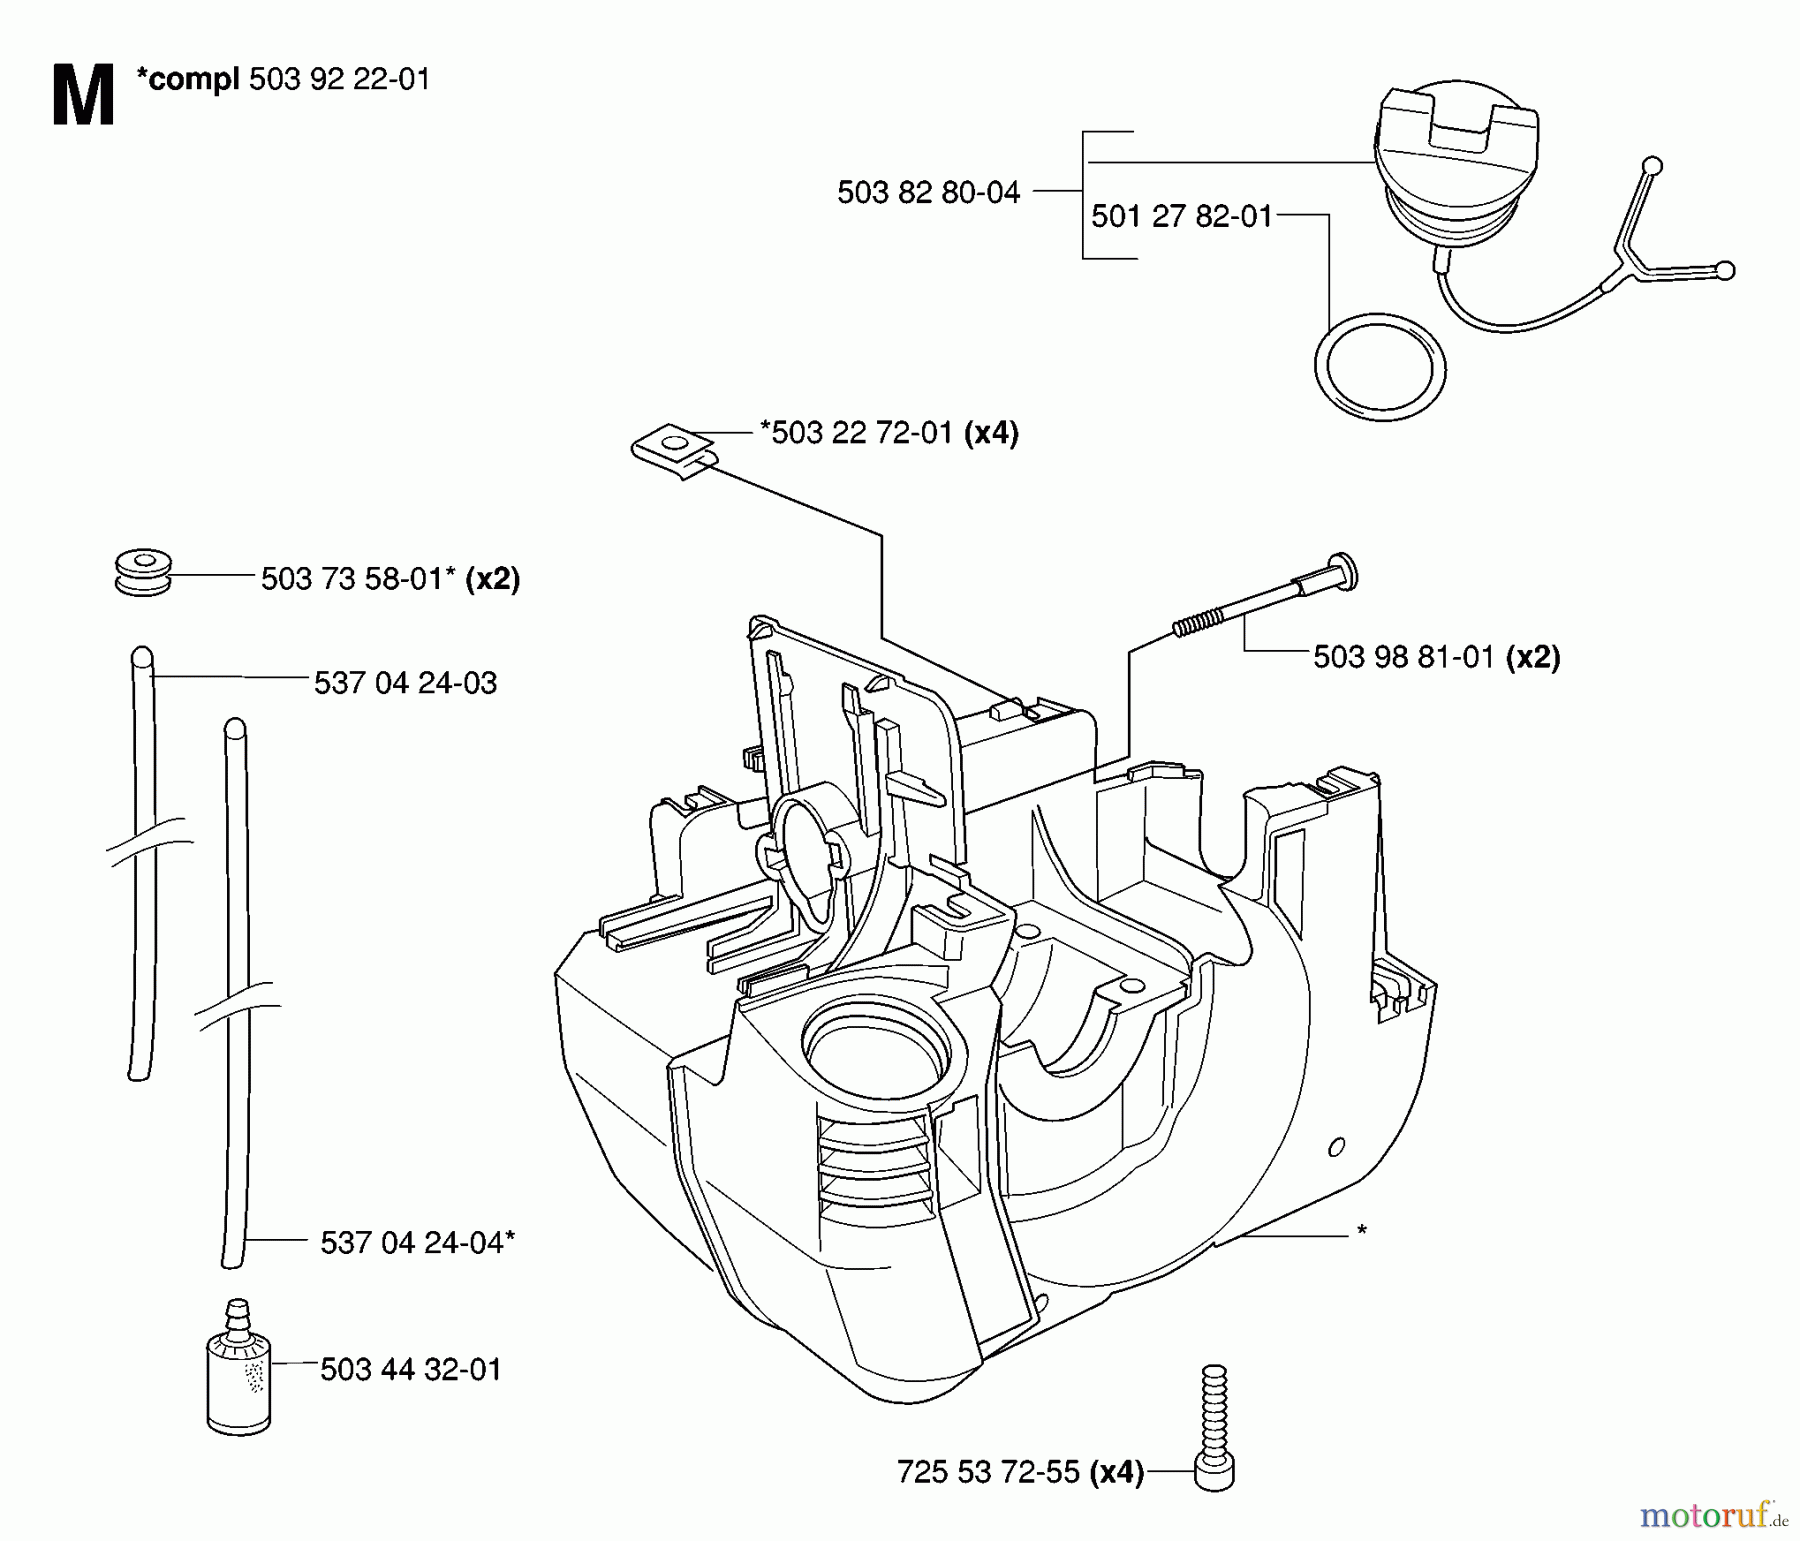  Jonsered Motorsensen, Trimmer GR2032 - Jonsered String/Brush Trimmer (2006-10) CRANKCASE